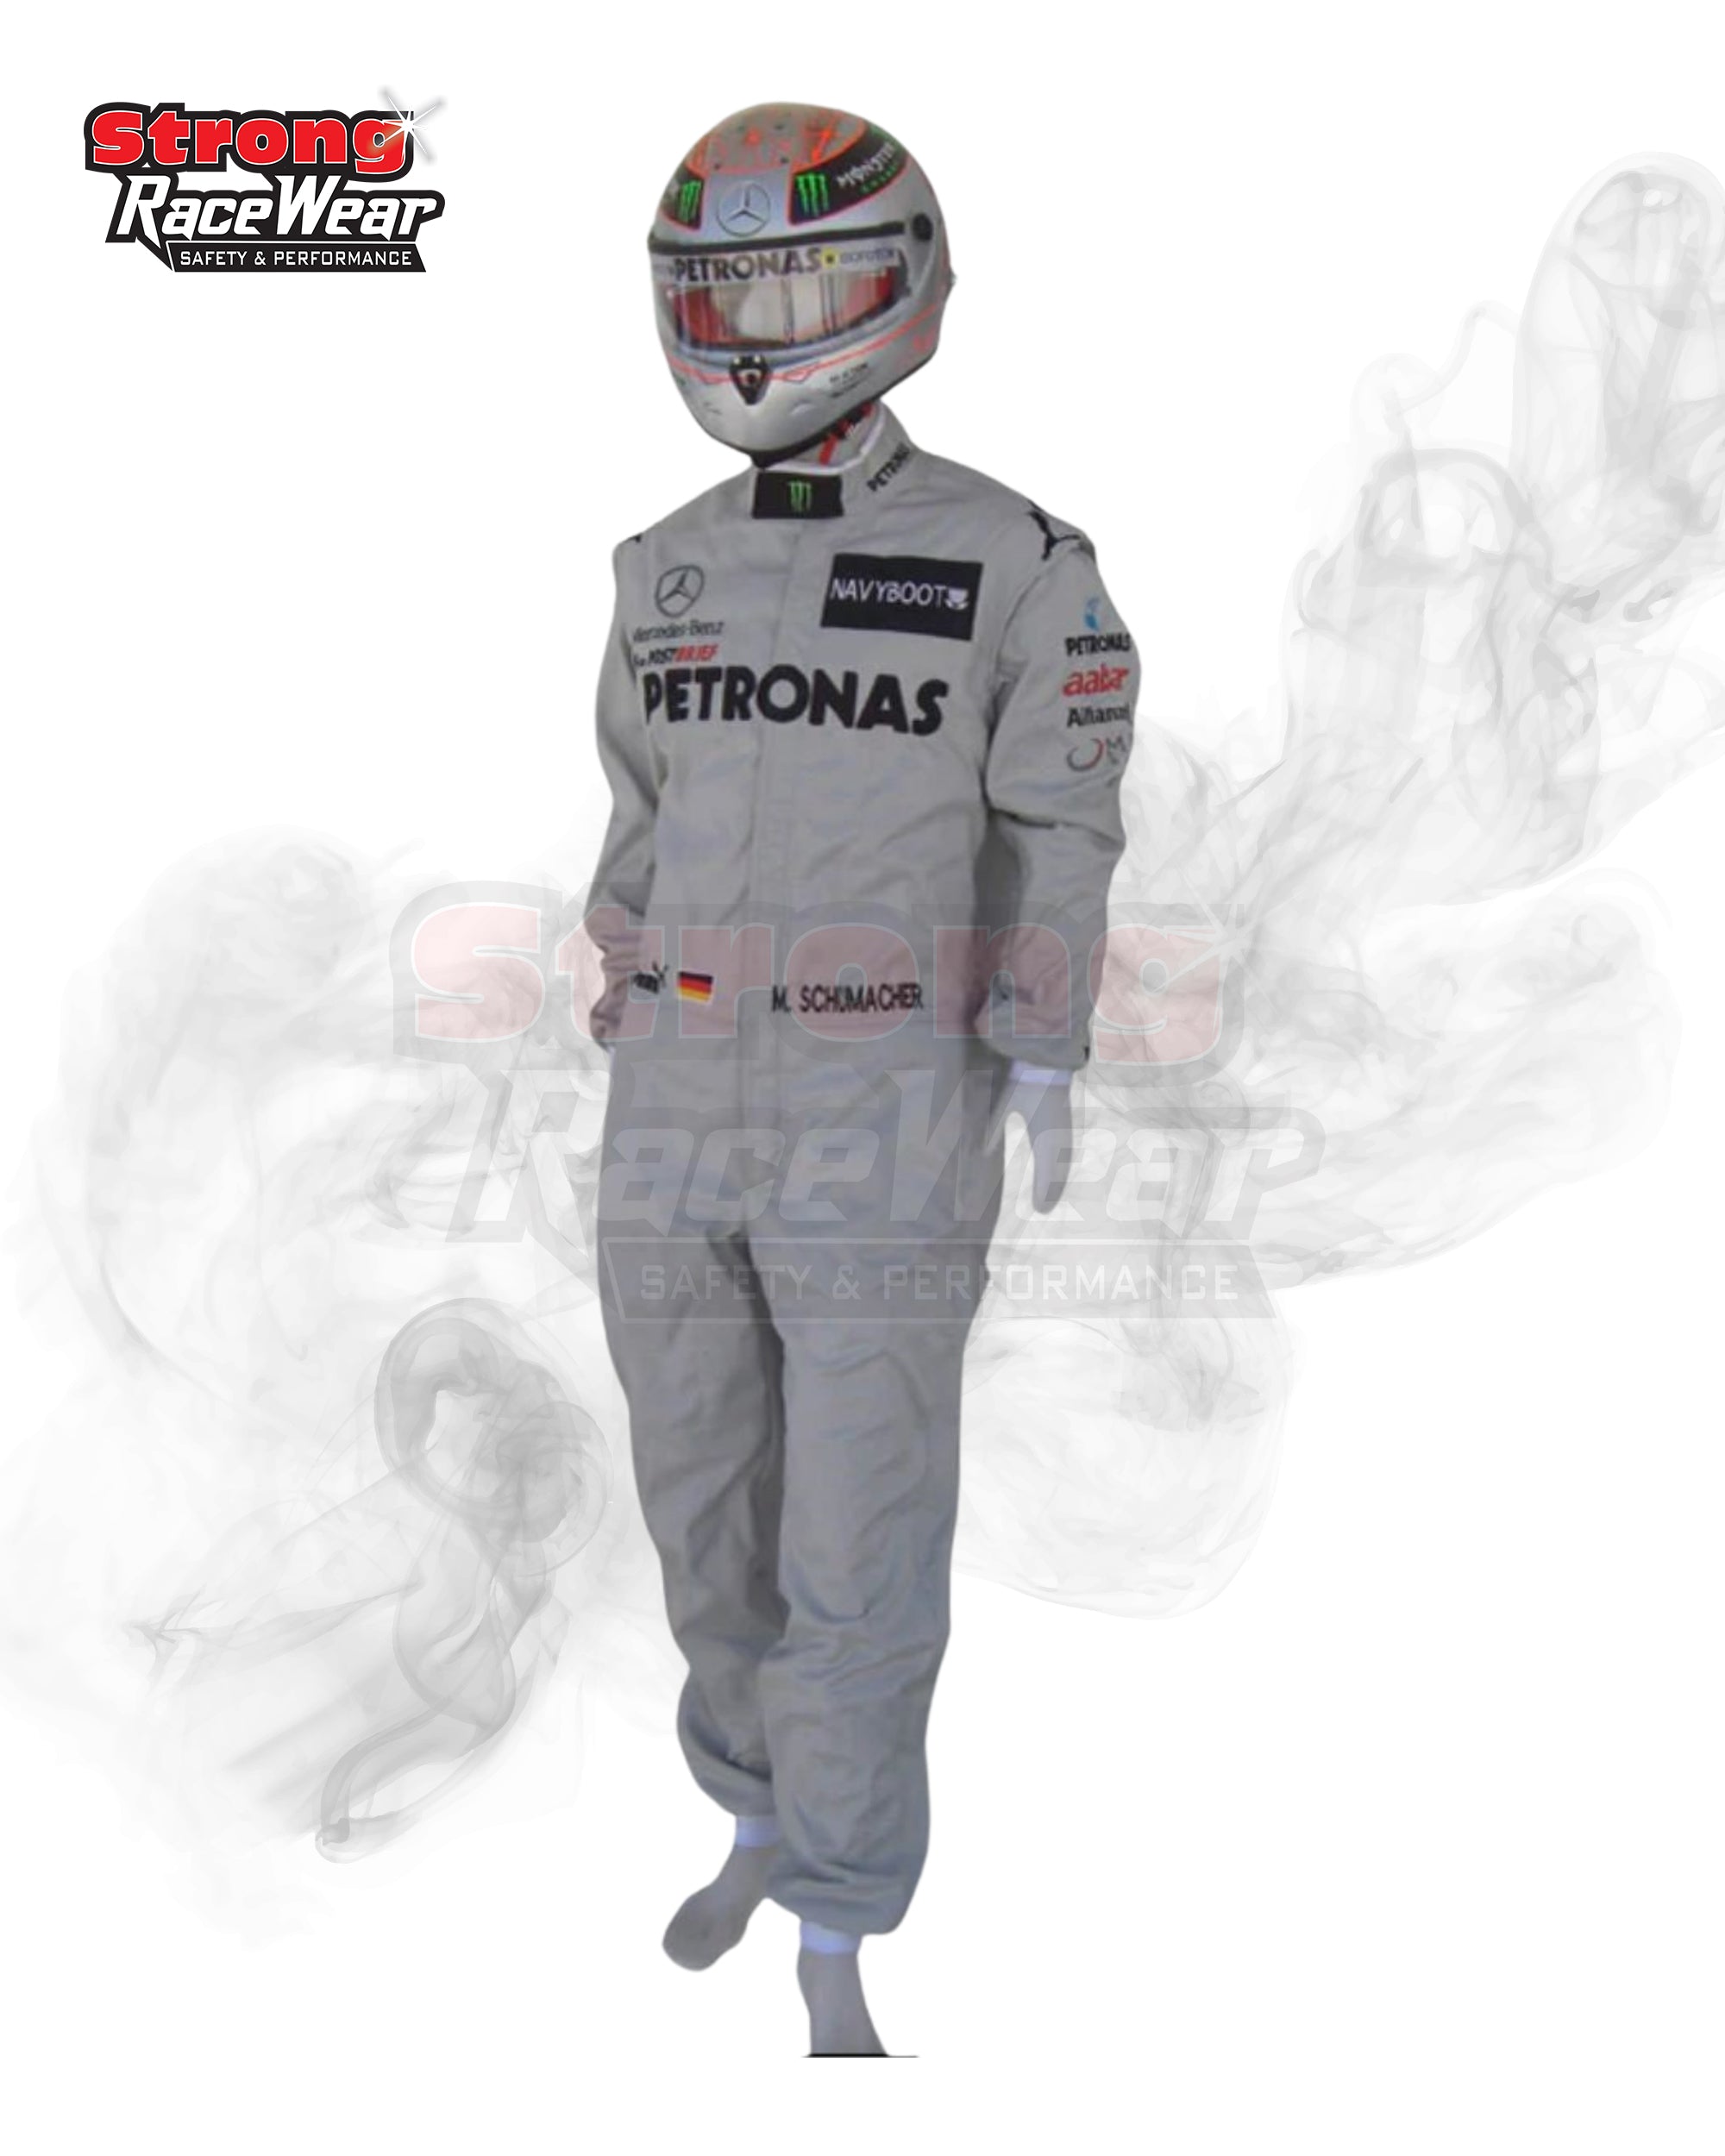 Michael Schumacher 2012 Mercedes Benz F1 Race Suit